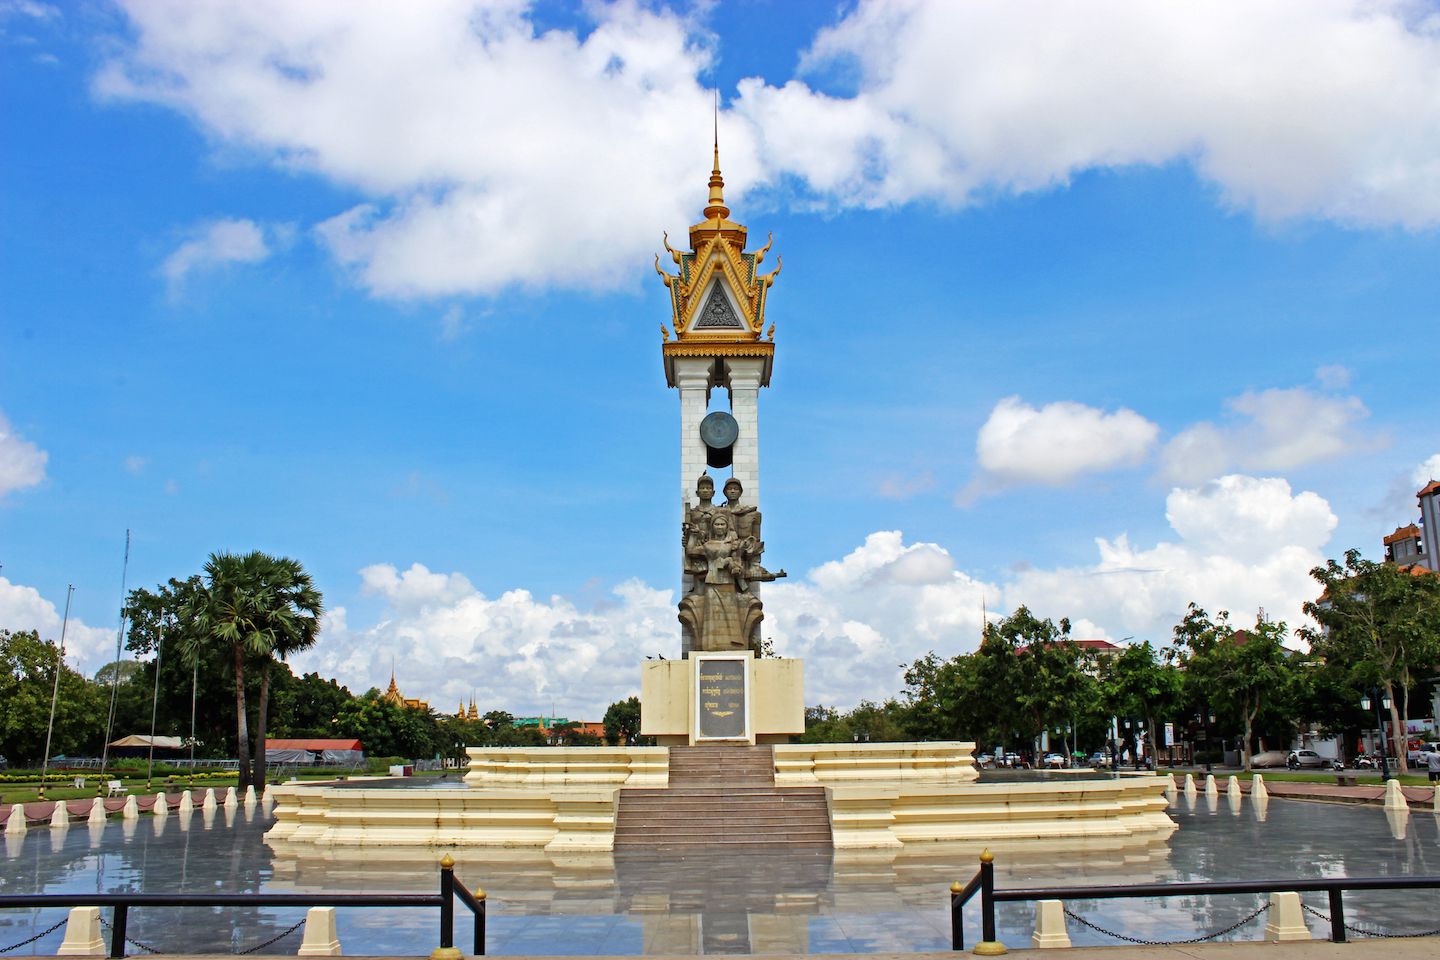 Cambodia-Vietnam Friendship Monument in Phnom Penh